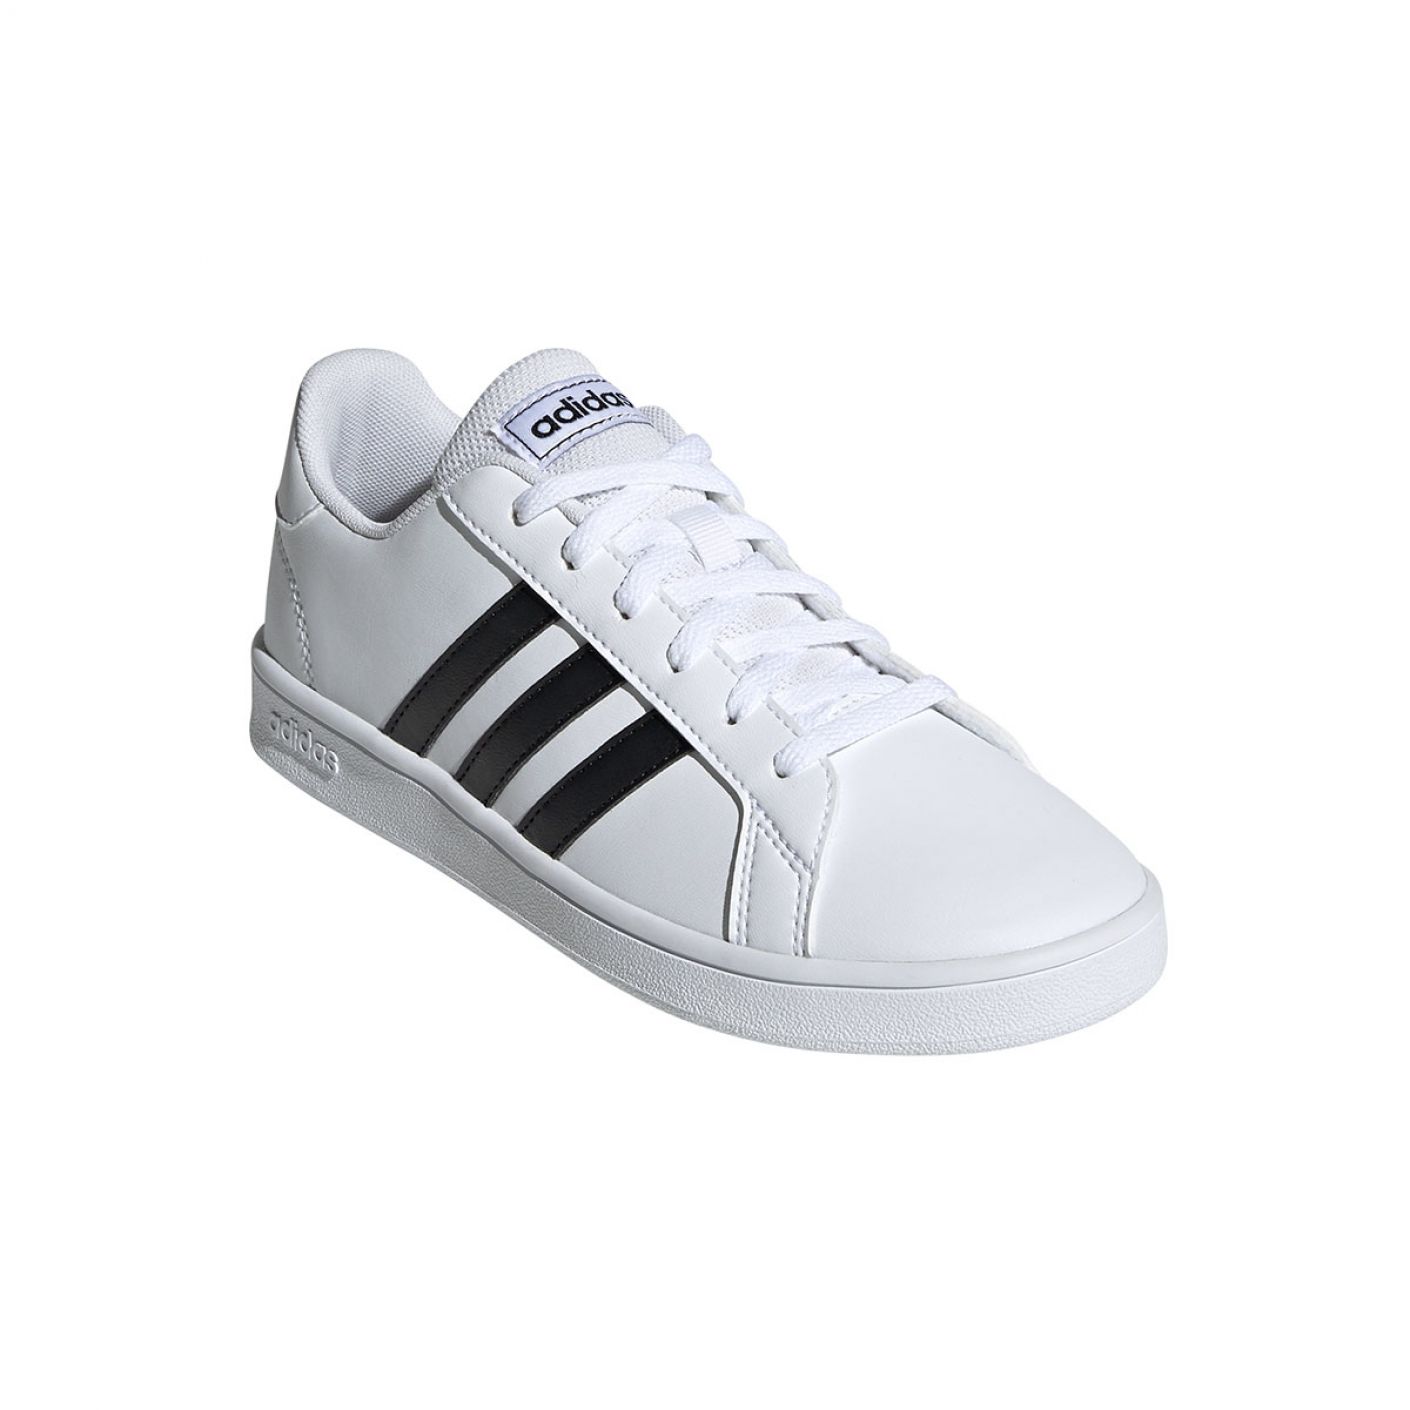 Adidas Grand Court K White Core Black Ftwr White da Ragazzi